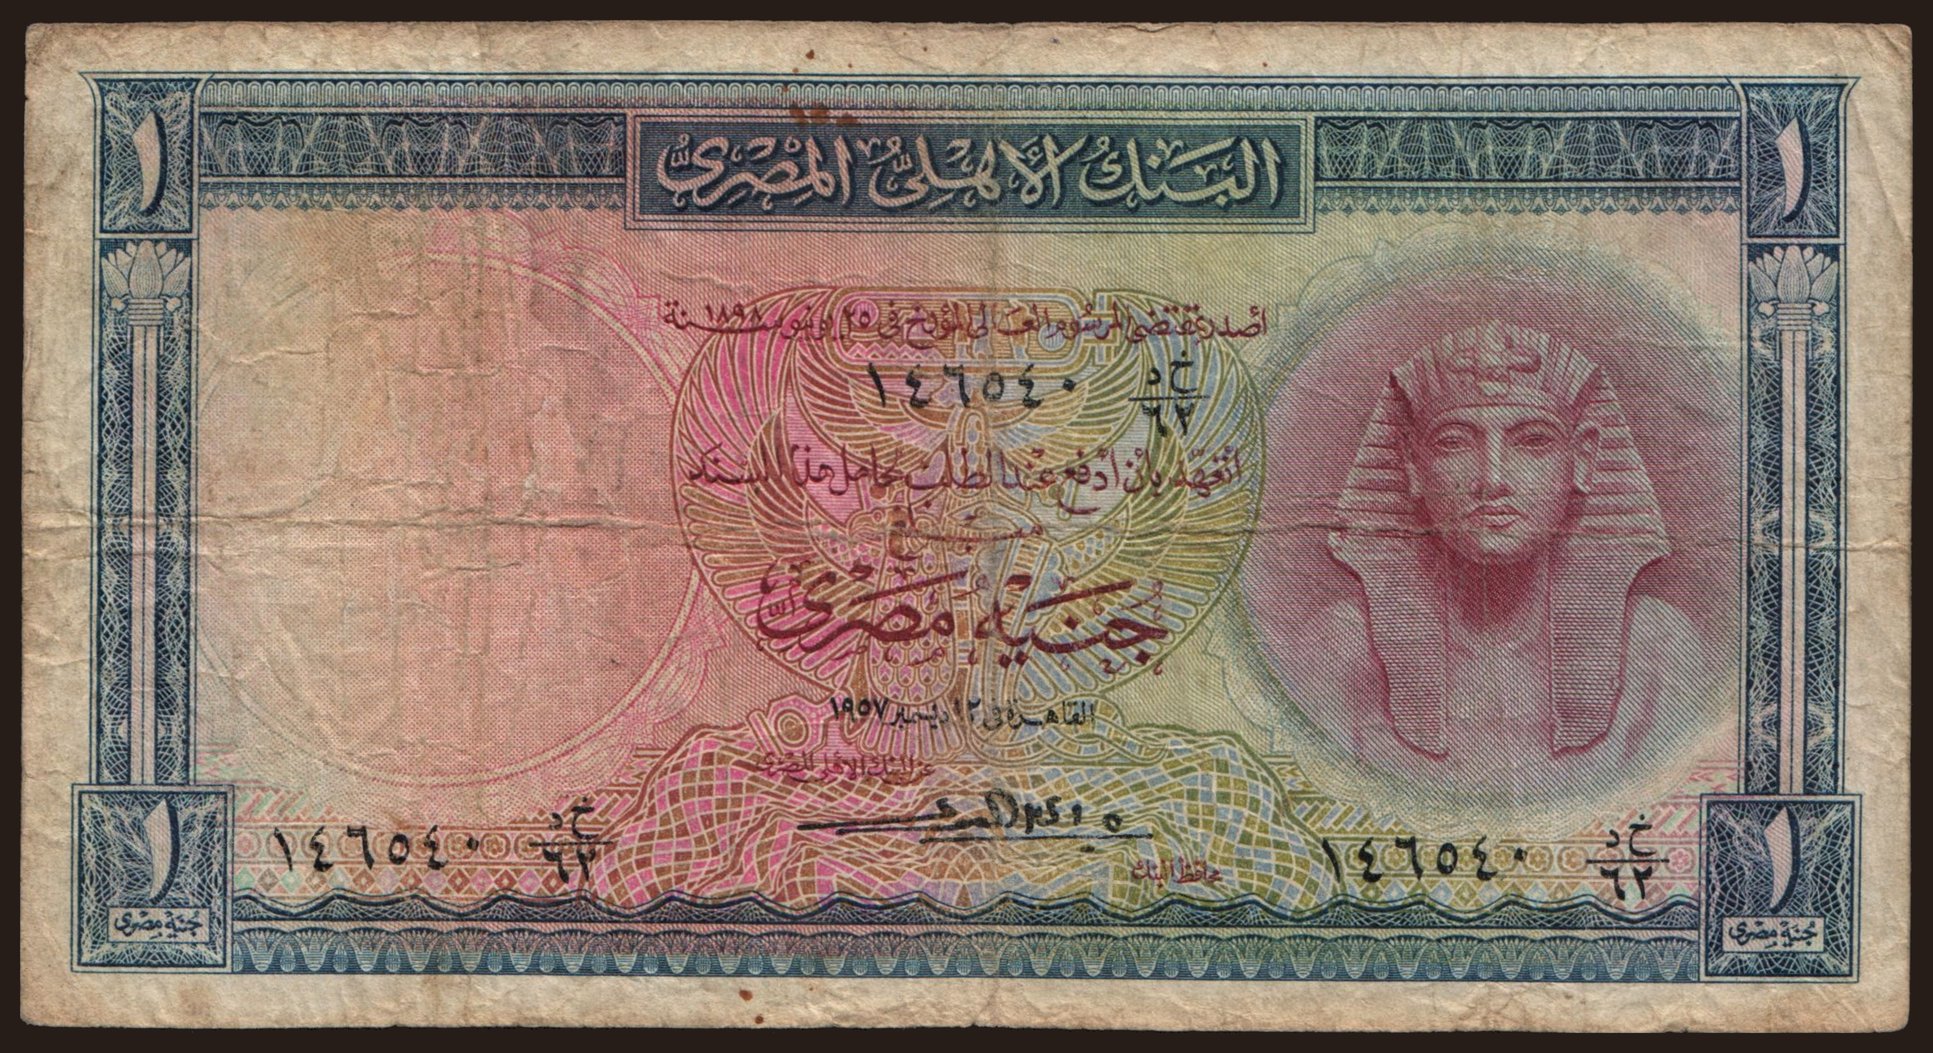 1 pound, 1957